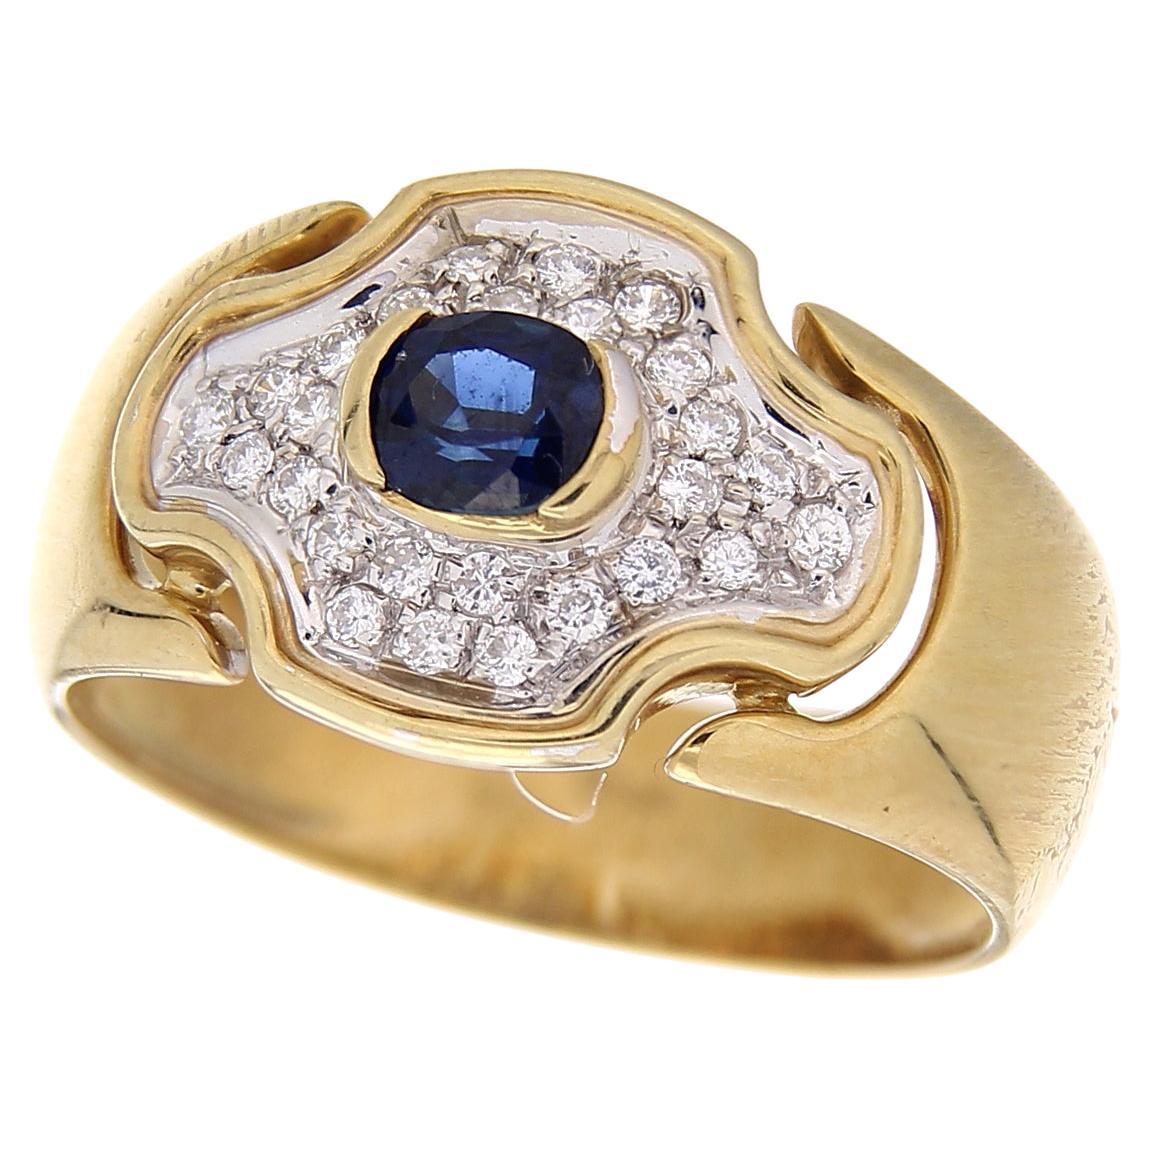 Bague vintage en or jaune 18 carats avec diamants et saphirs bleus ovales